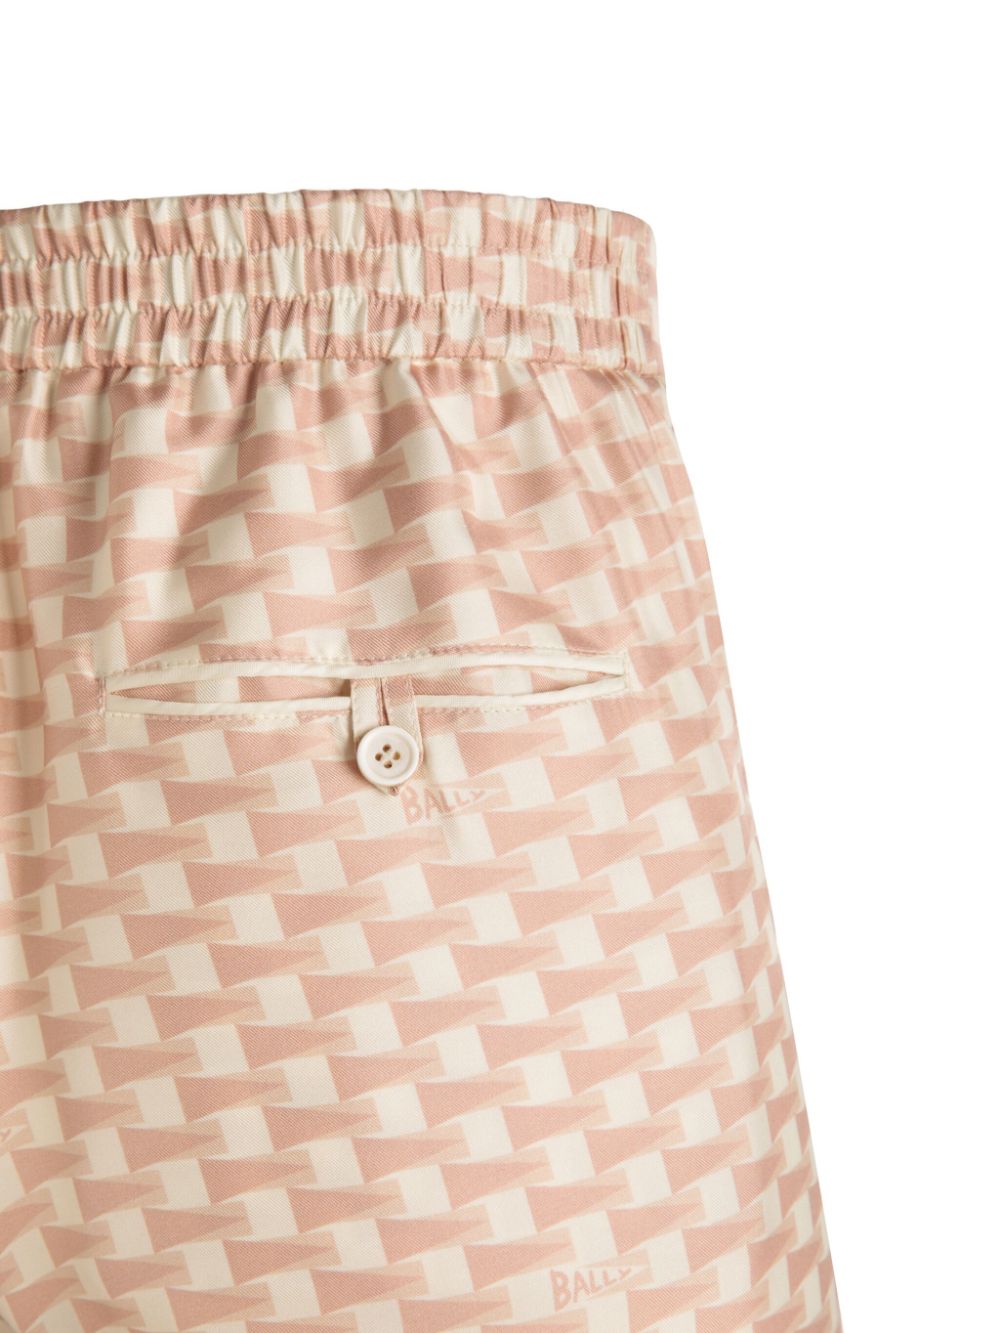 Bally Straight broek met geometrische print - Roze